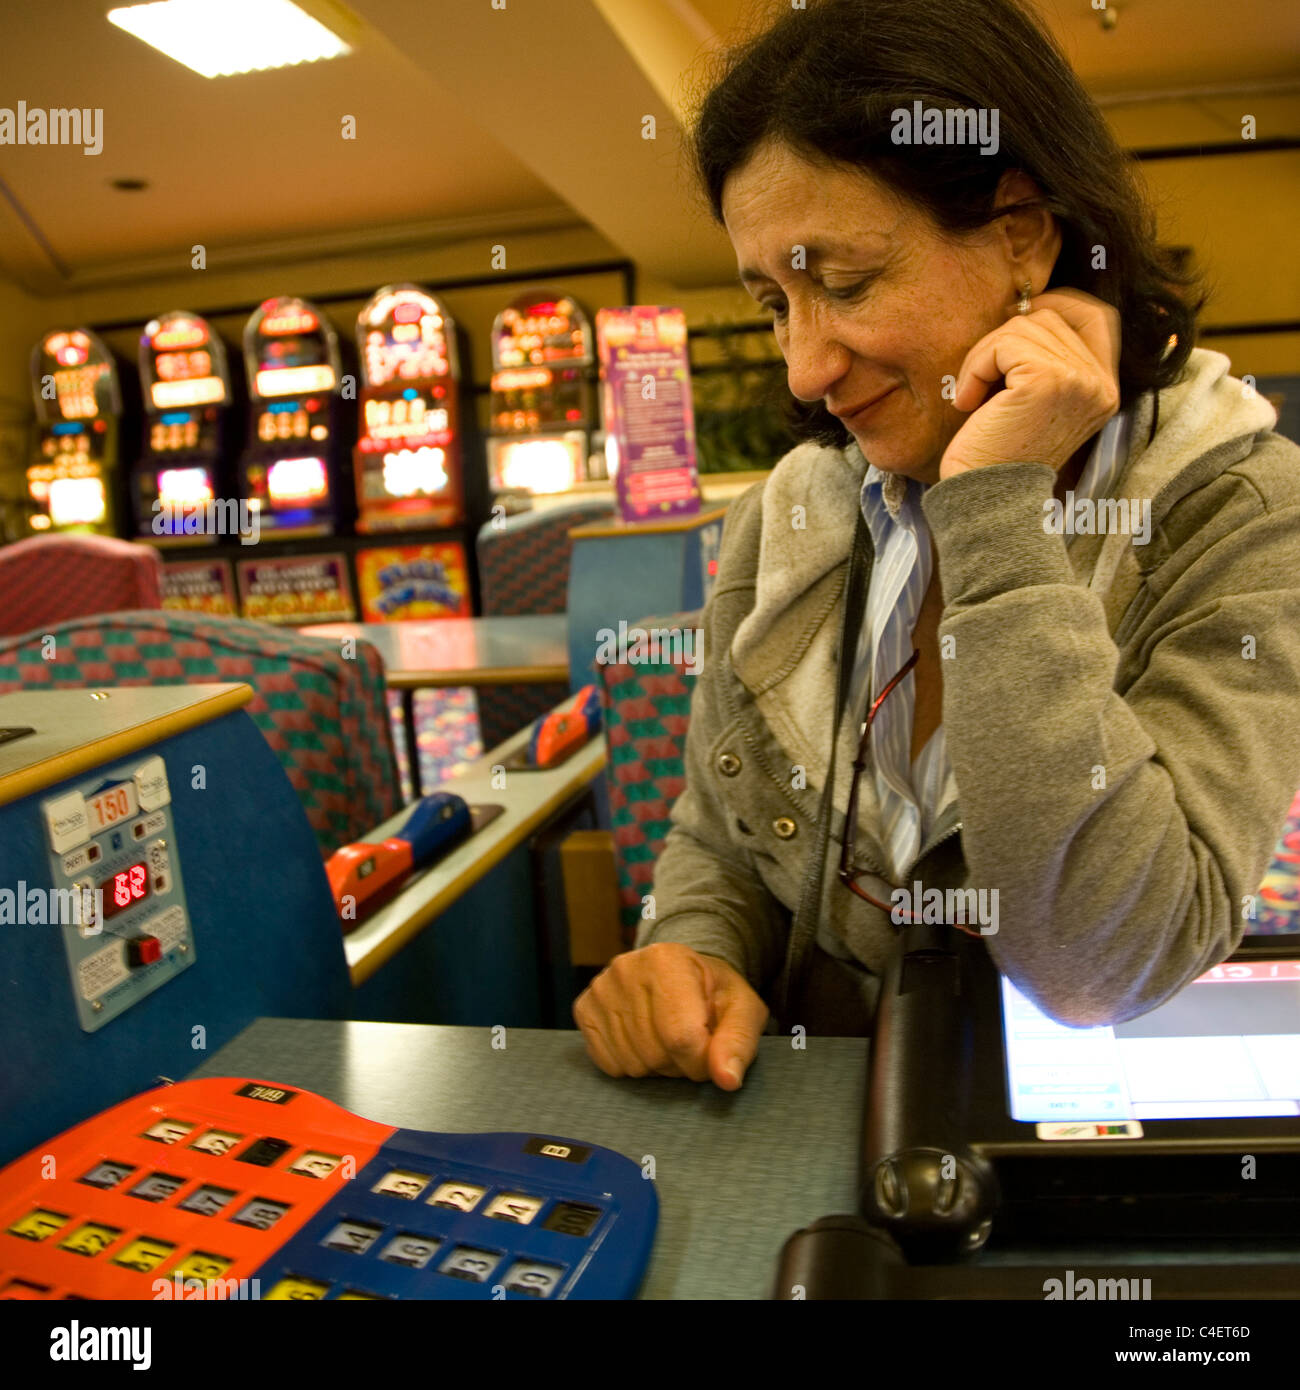 Woman playing table bingo at Beacon Bingo in London Stock Photo